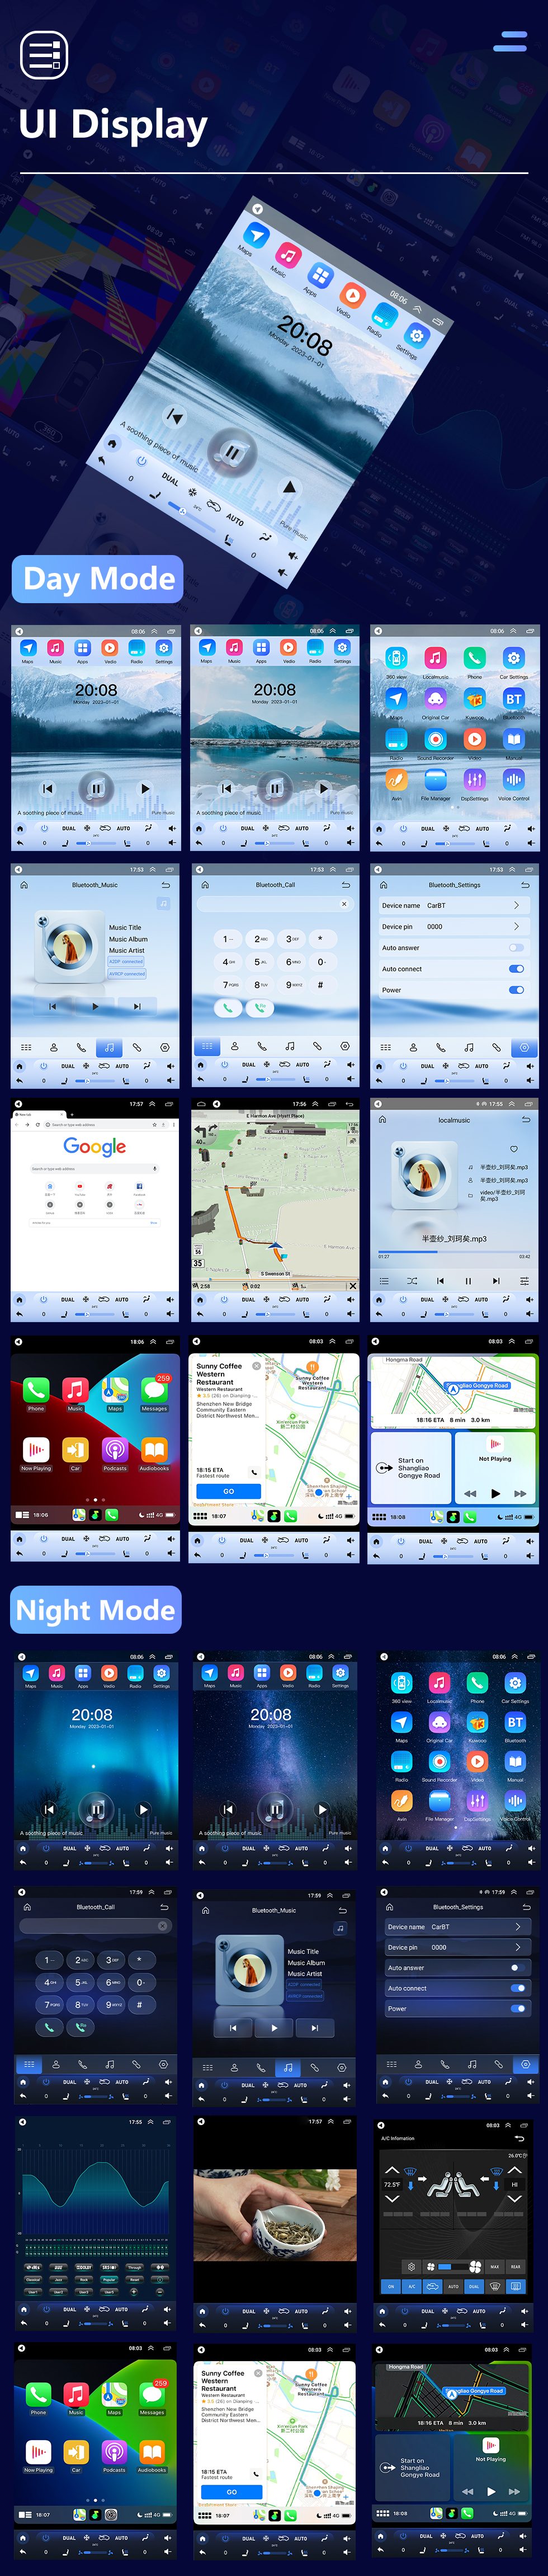 Seicane Für 2013 VOLKSWAGEN JETTA Radio 9,7 Zoll Android 10.0 GPS-Navigation mit HD Touchscreen Bluetooth-Unterstützung Carplay Rückfahrkamera